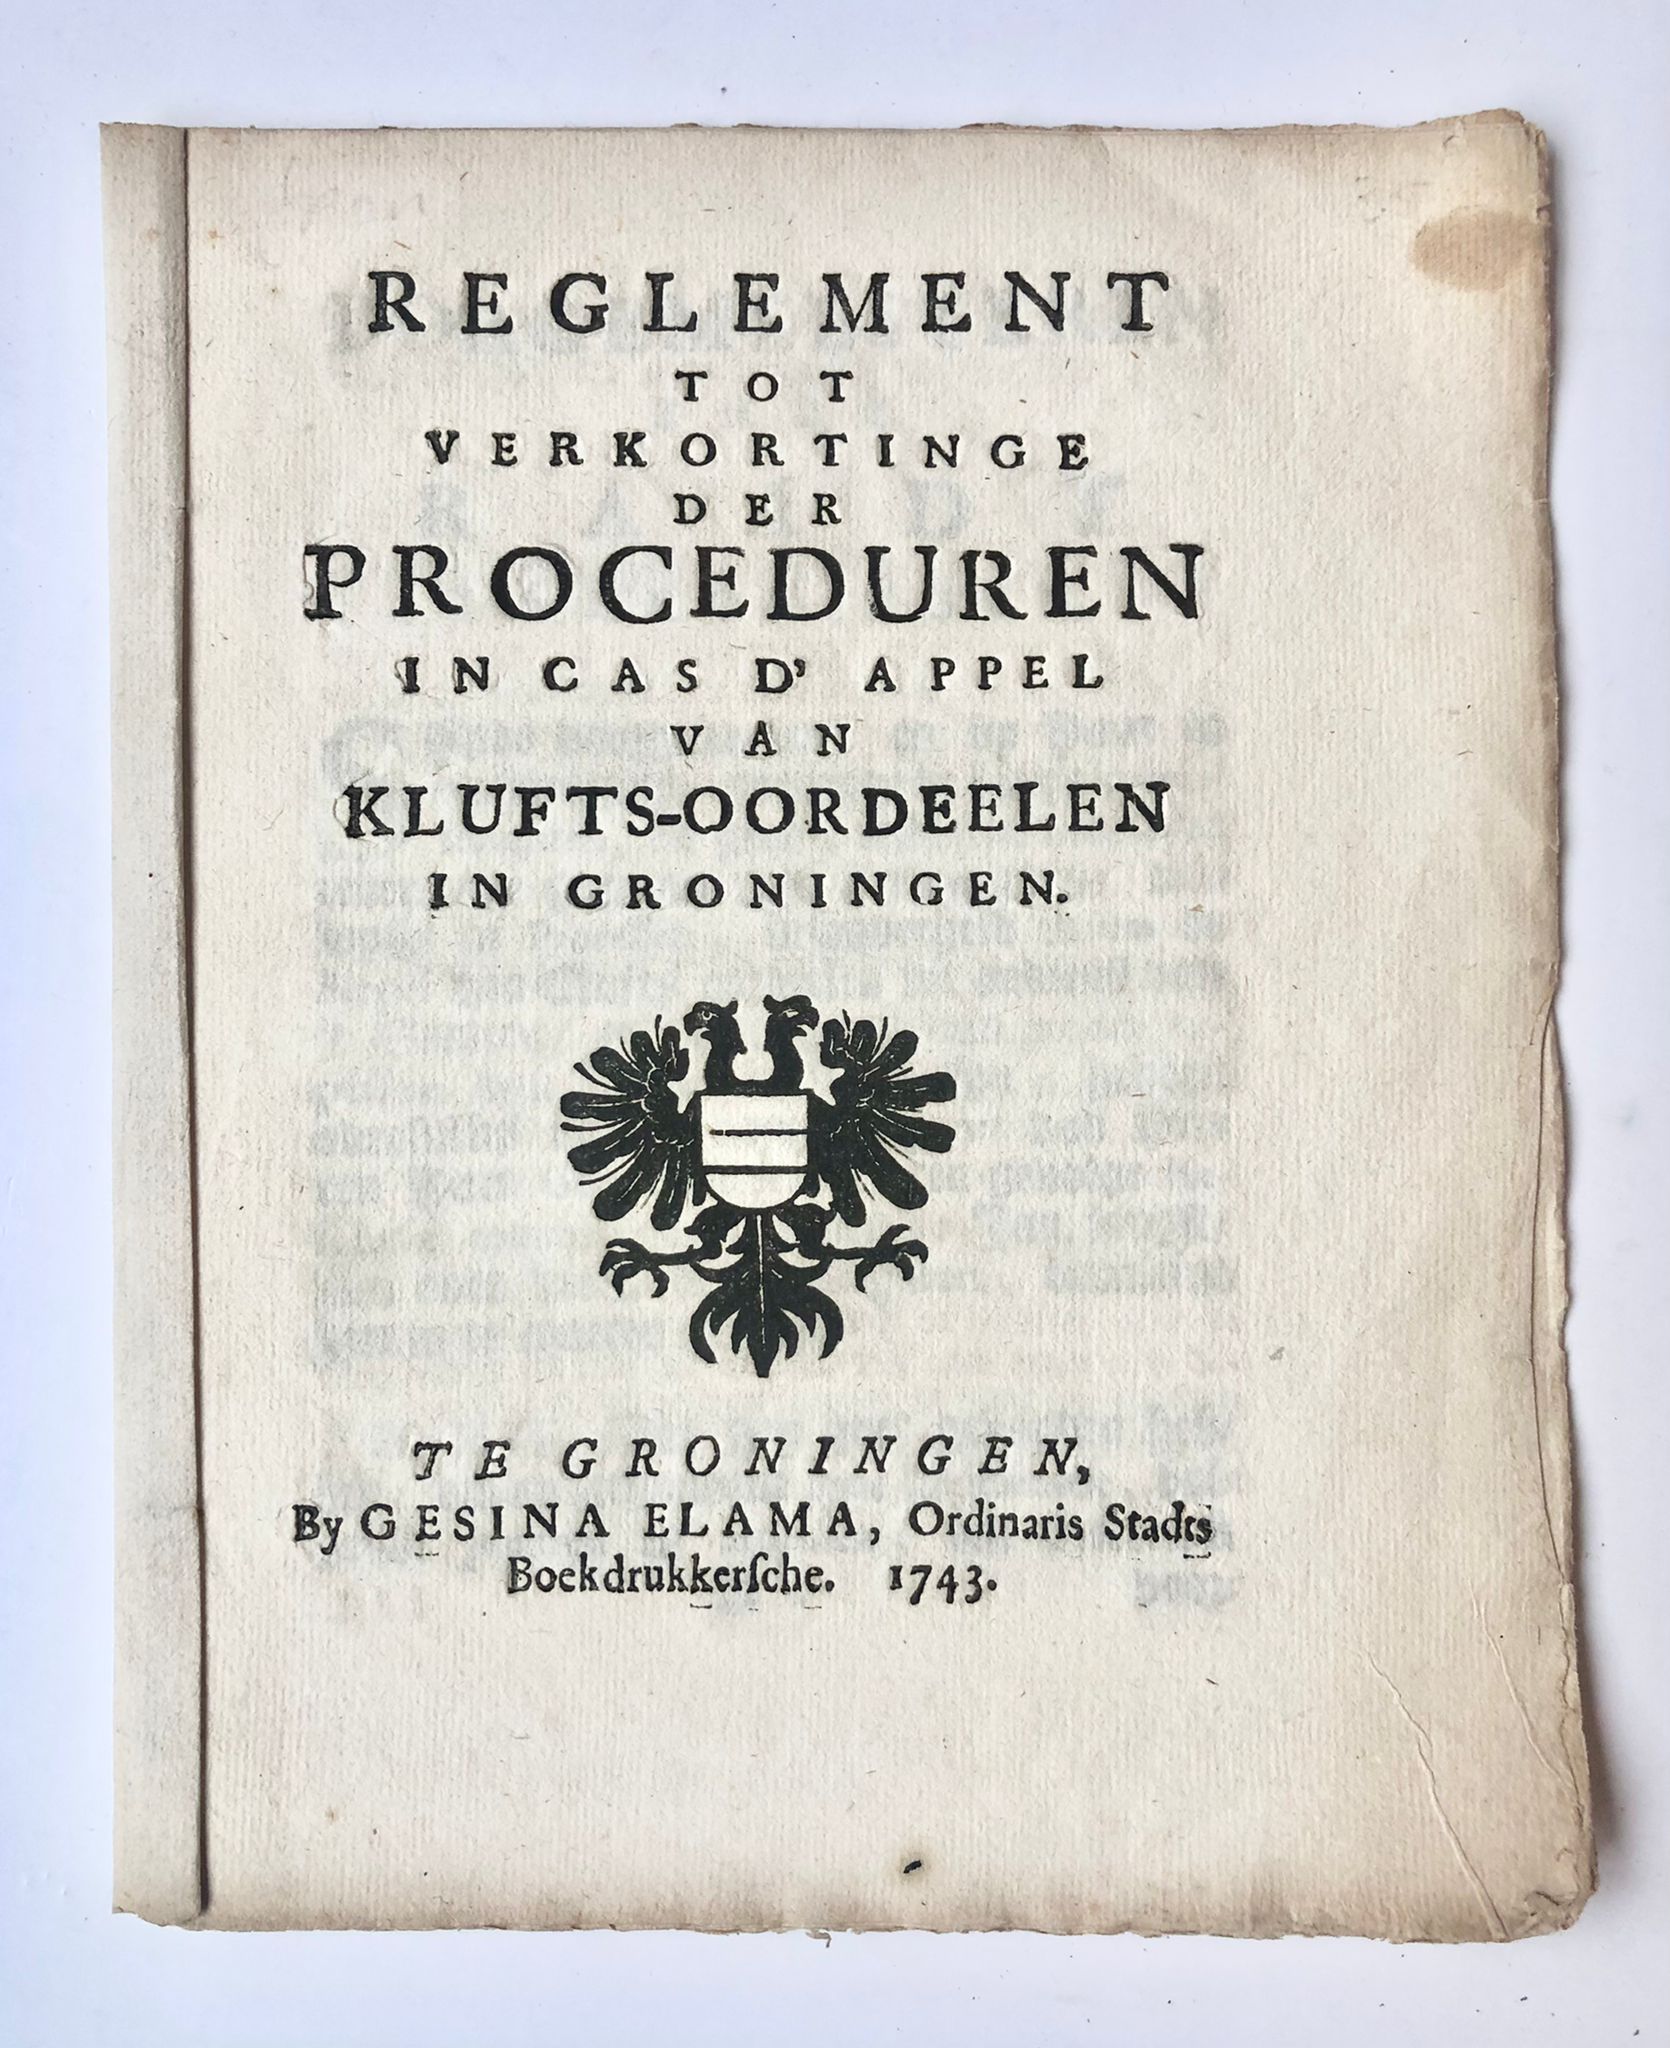 [Groningen, 1743] Reglement tot verkortinge der proceduren in cas d’appel van klufts-oordeelen in Groningen, by Gesina Elama, Te Groningen, 1743, 9 pp.